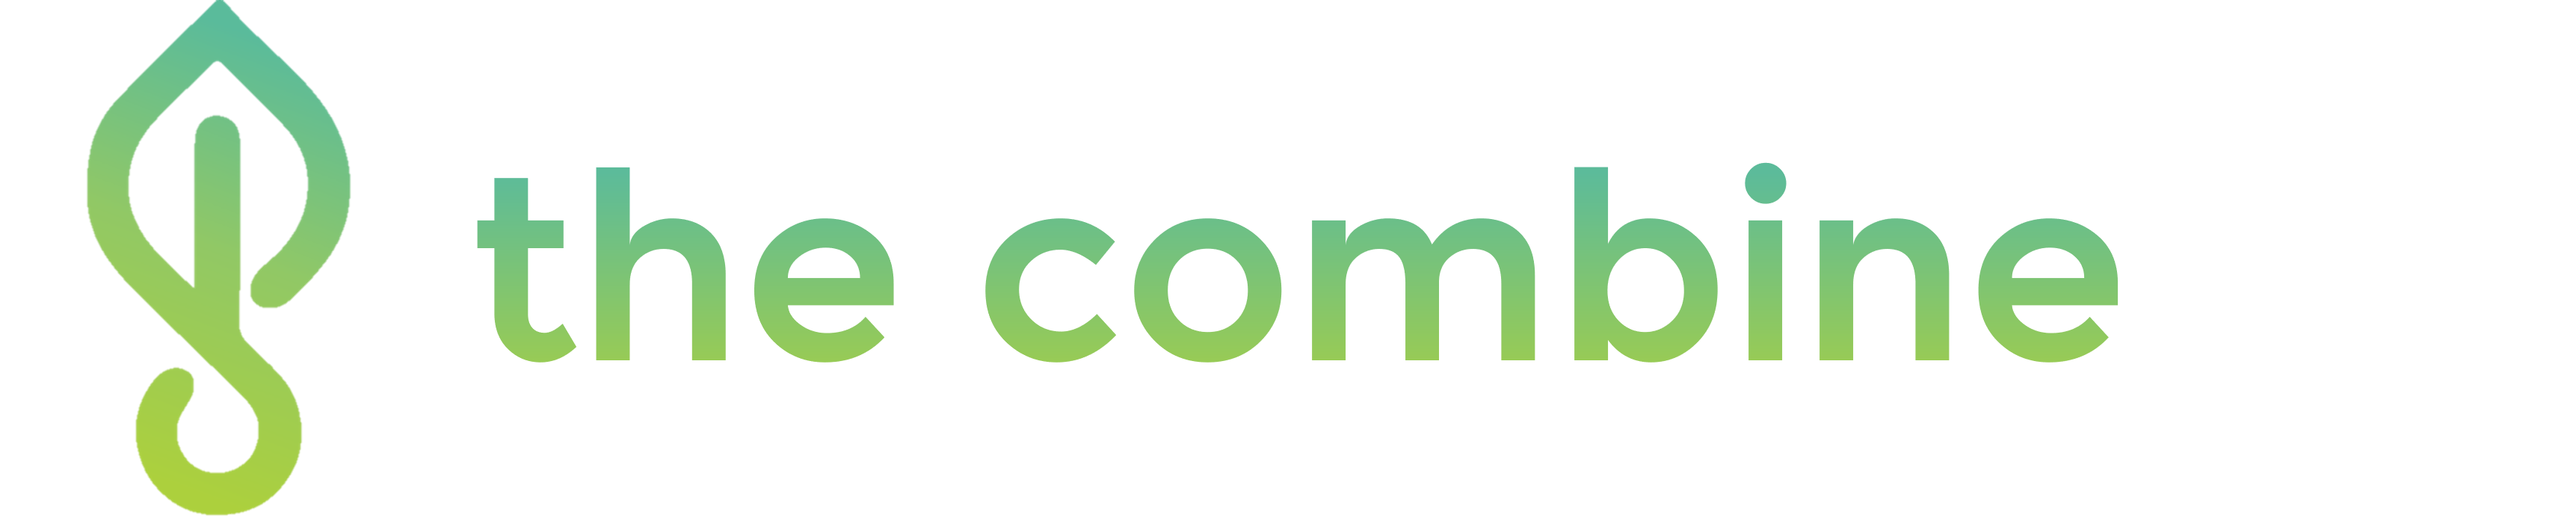 The Combine  logo